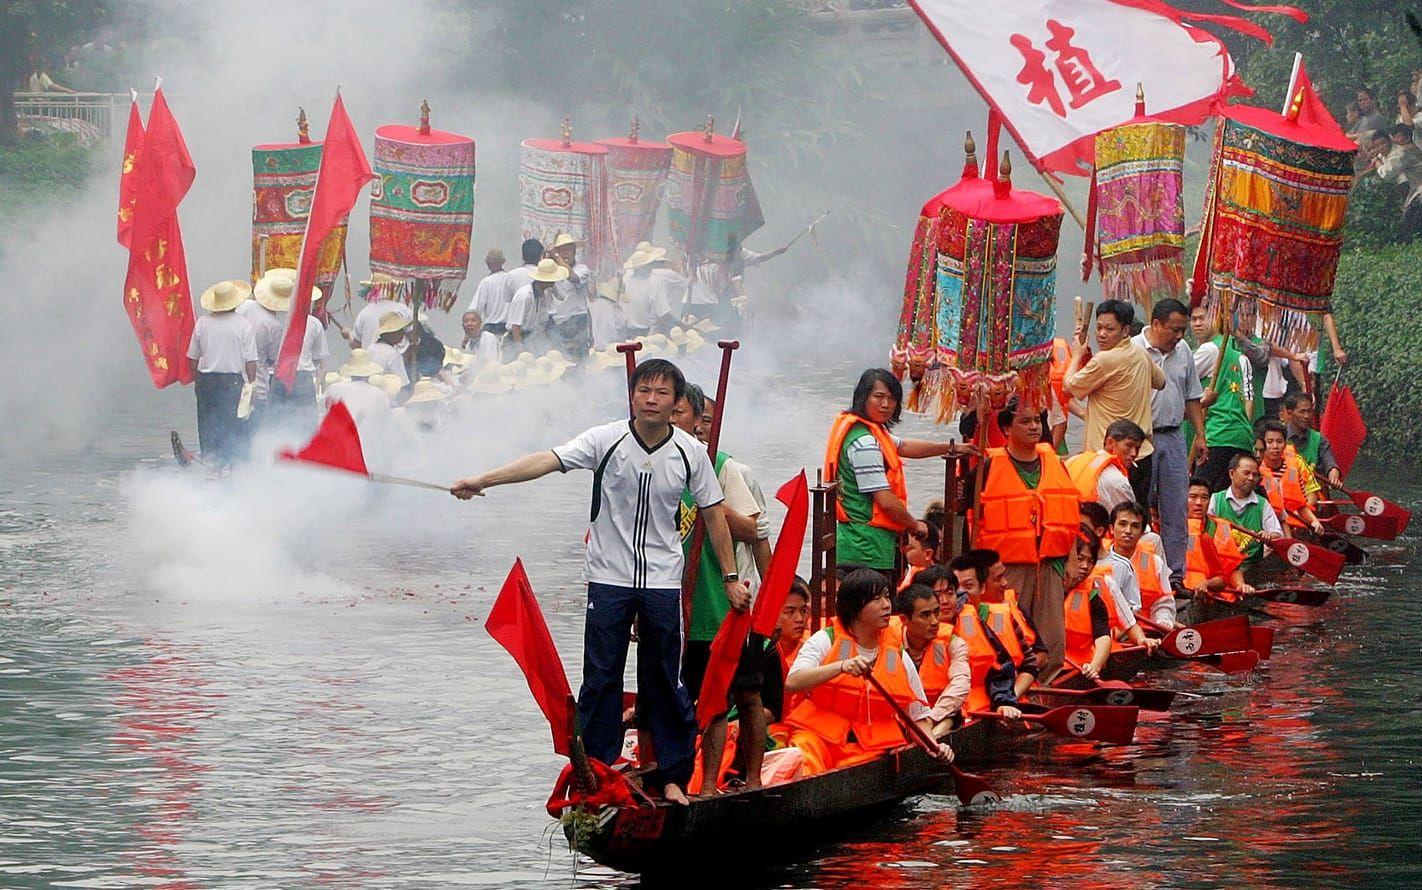 Drakbåtfestivalen i Kina firas den femte dagen i den femte månaden enligt den kinesiska månkalendern. Här tävlar drakbåtar i Guangzhou, Guangdong, Kina. 